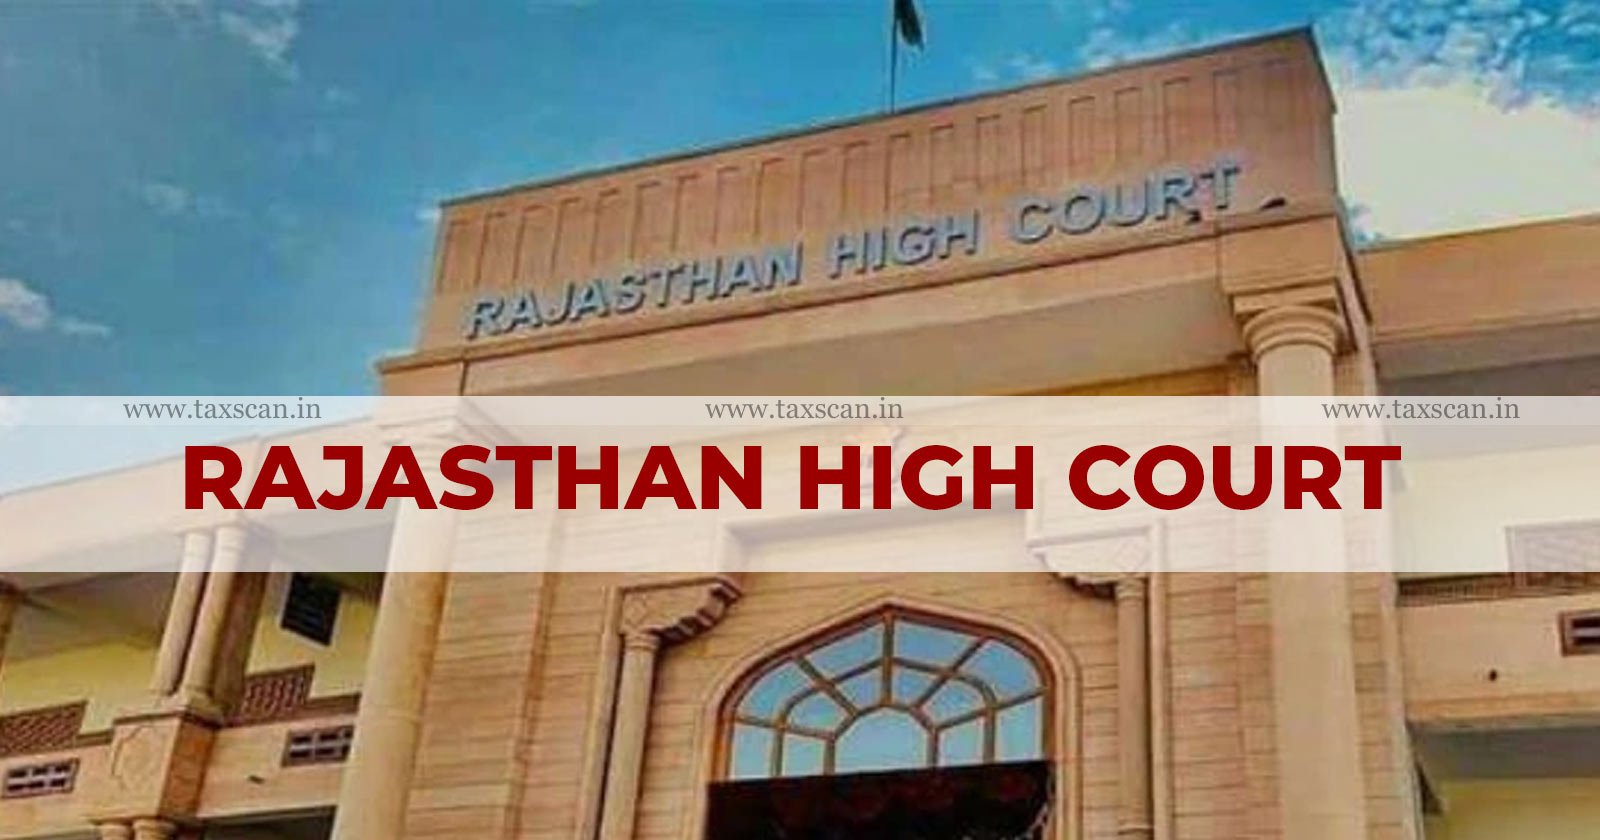 Rajasthan High Court - GST - GST Joint Commissioner - Enforcement Wing - GST Joint Commissioner powers - taxscan